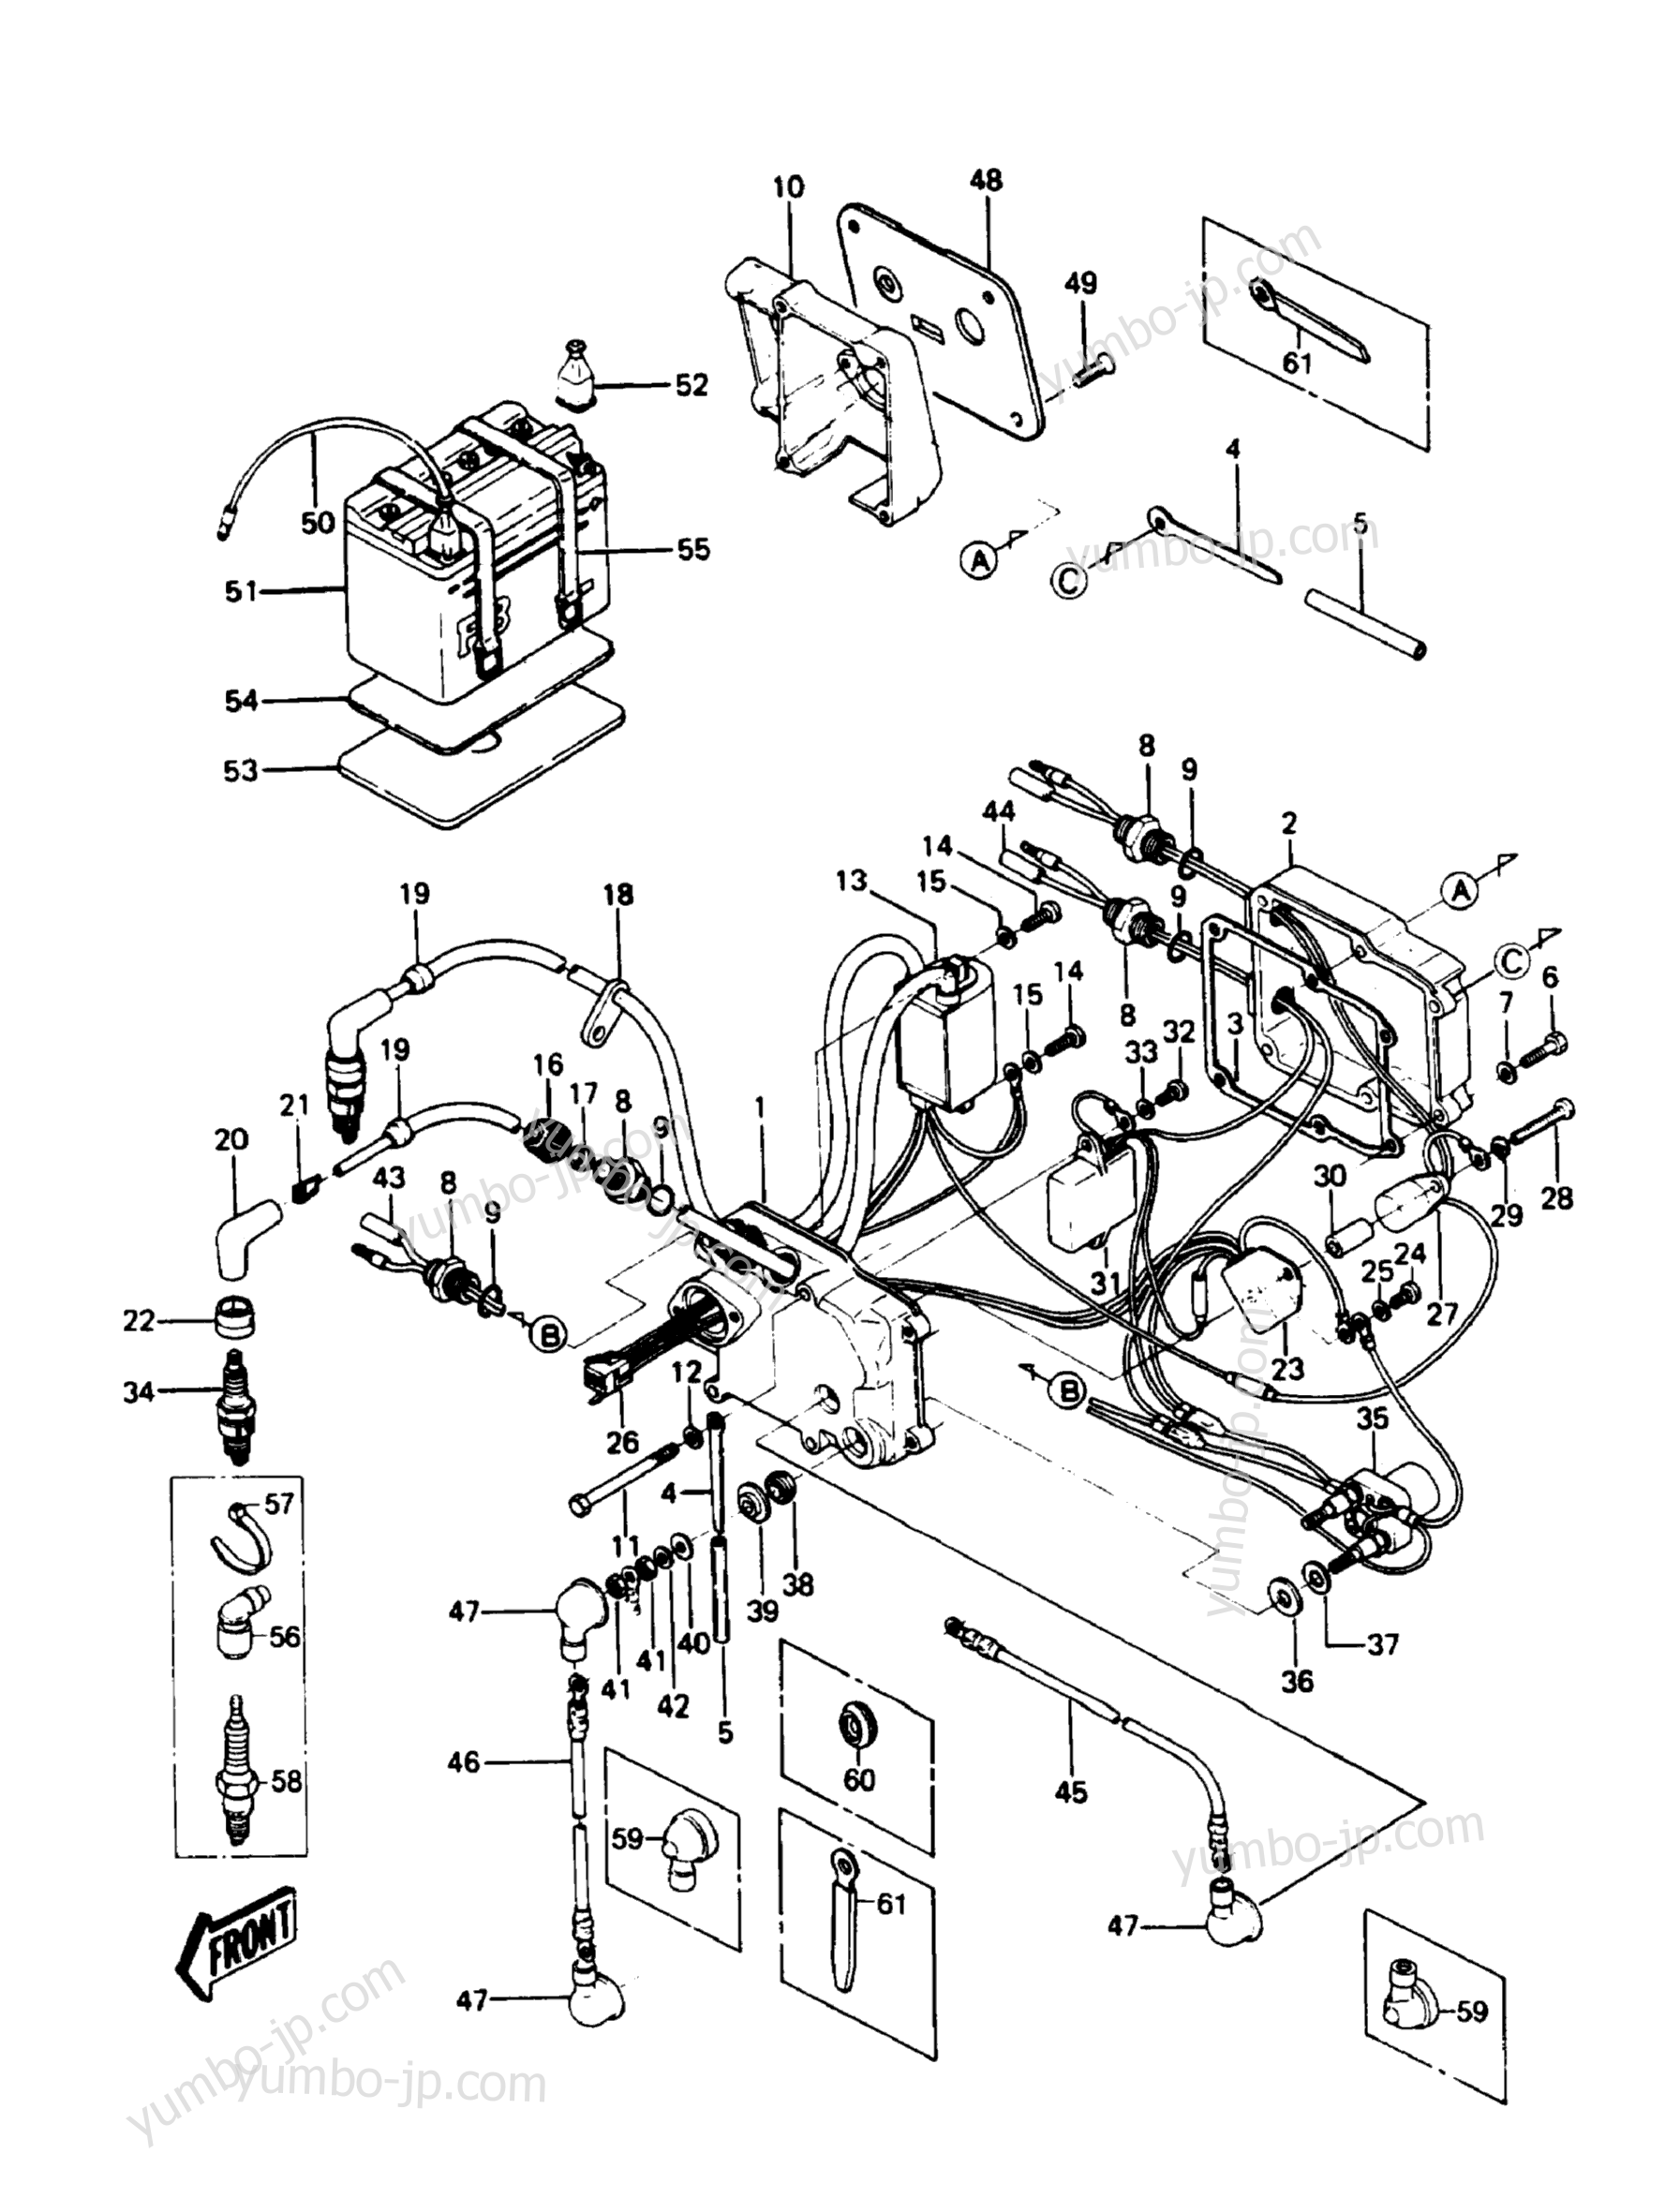 Electric Case для гидроциклов KAWASAKI JST SKI 550 (JS550-A6) 1987 г.